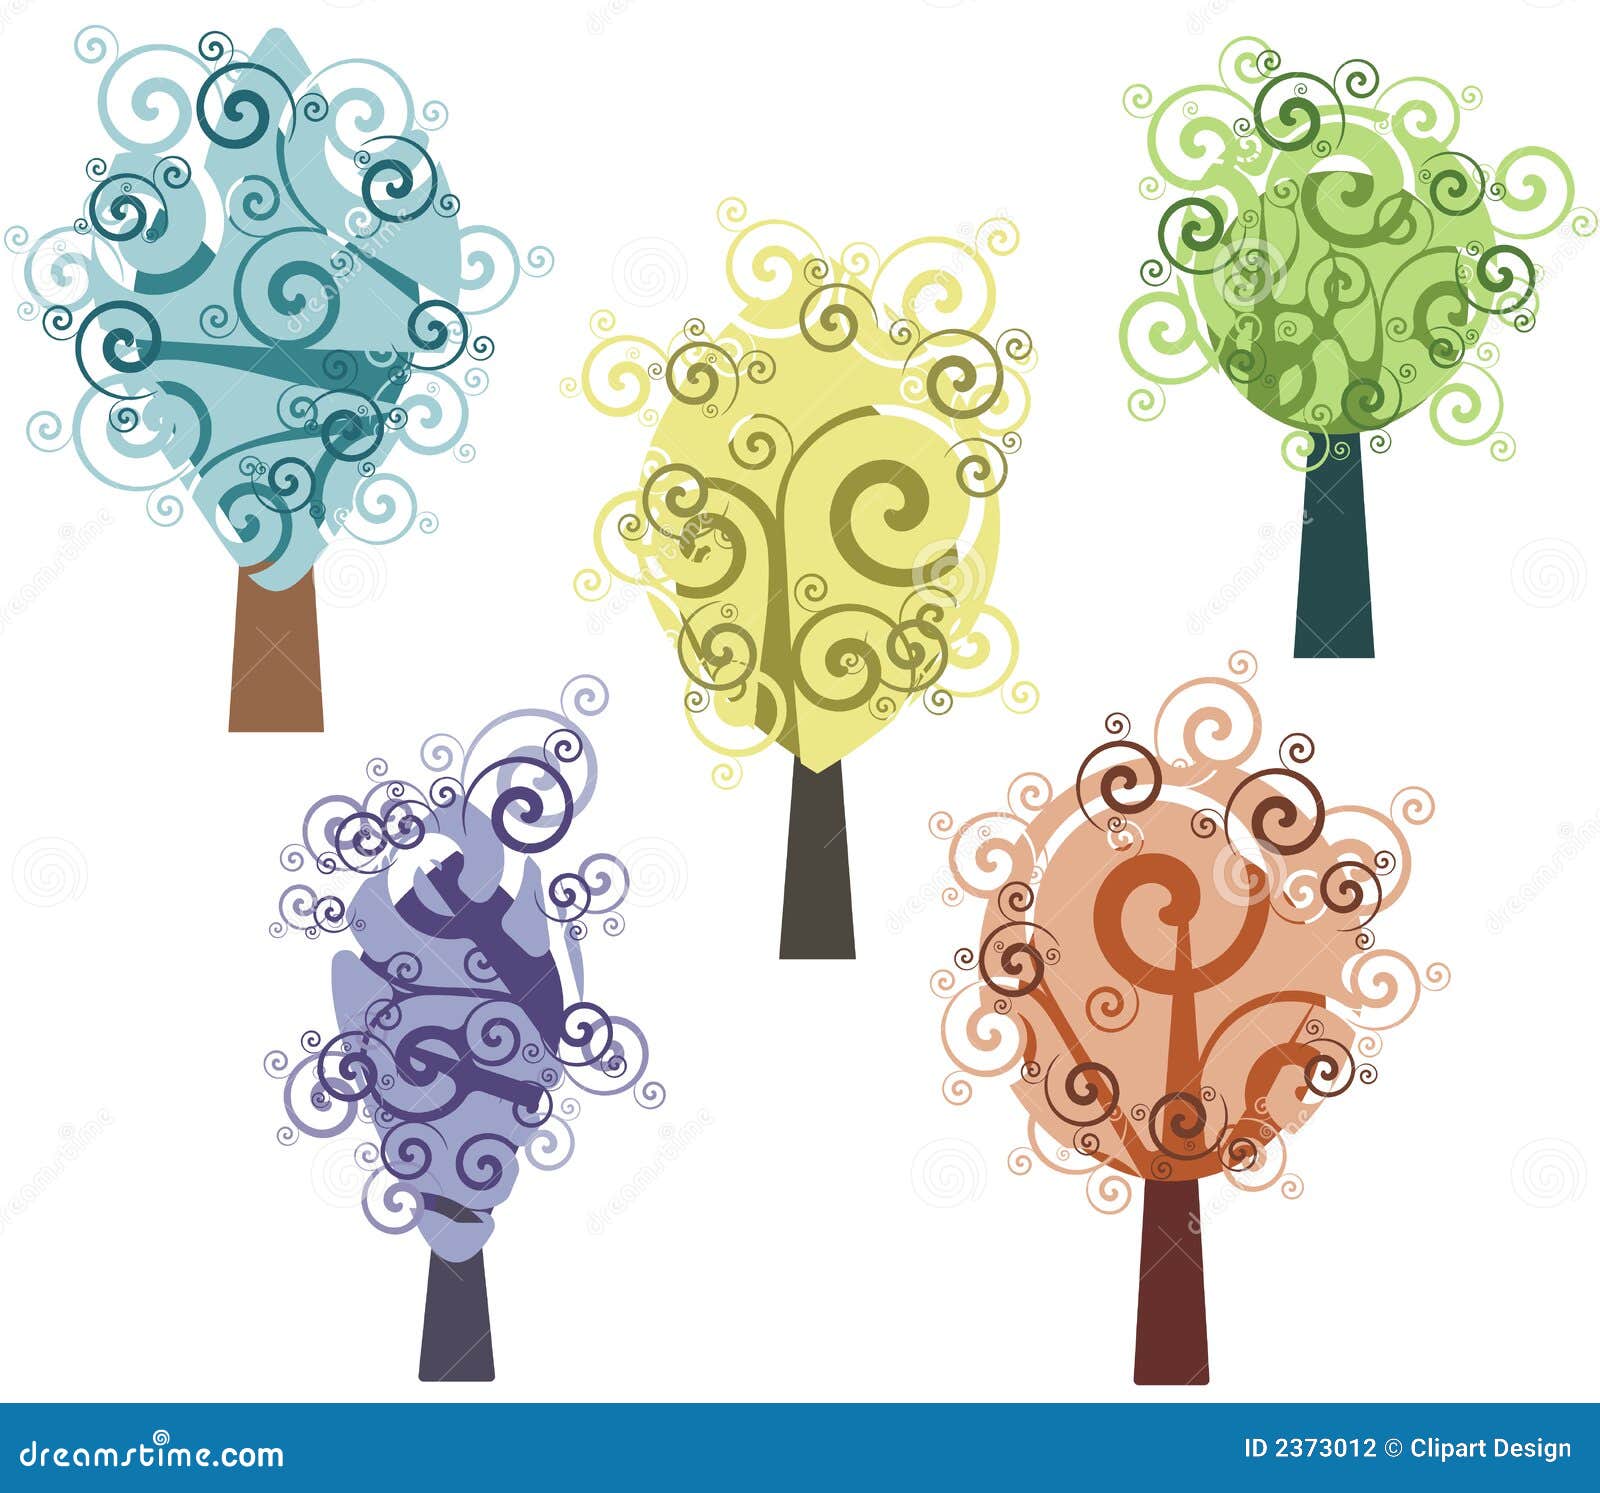 Fancy Tree vector illustration © benchart (#3688273)